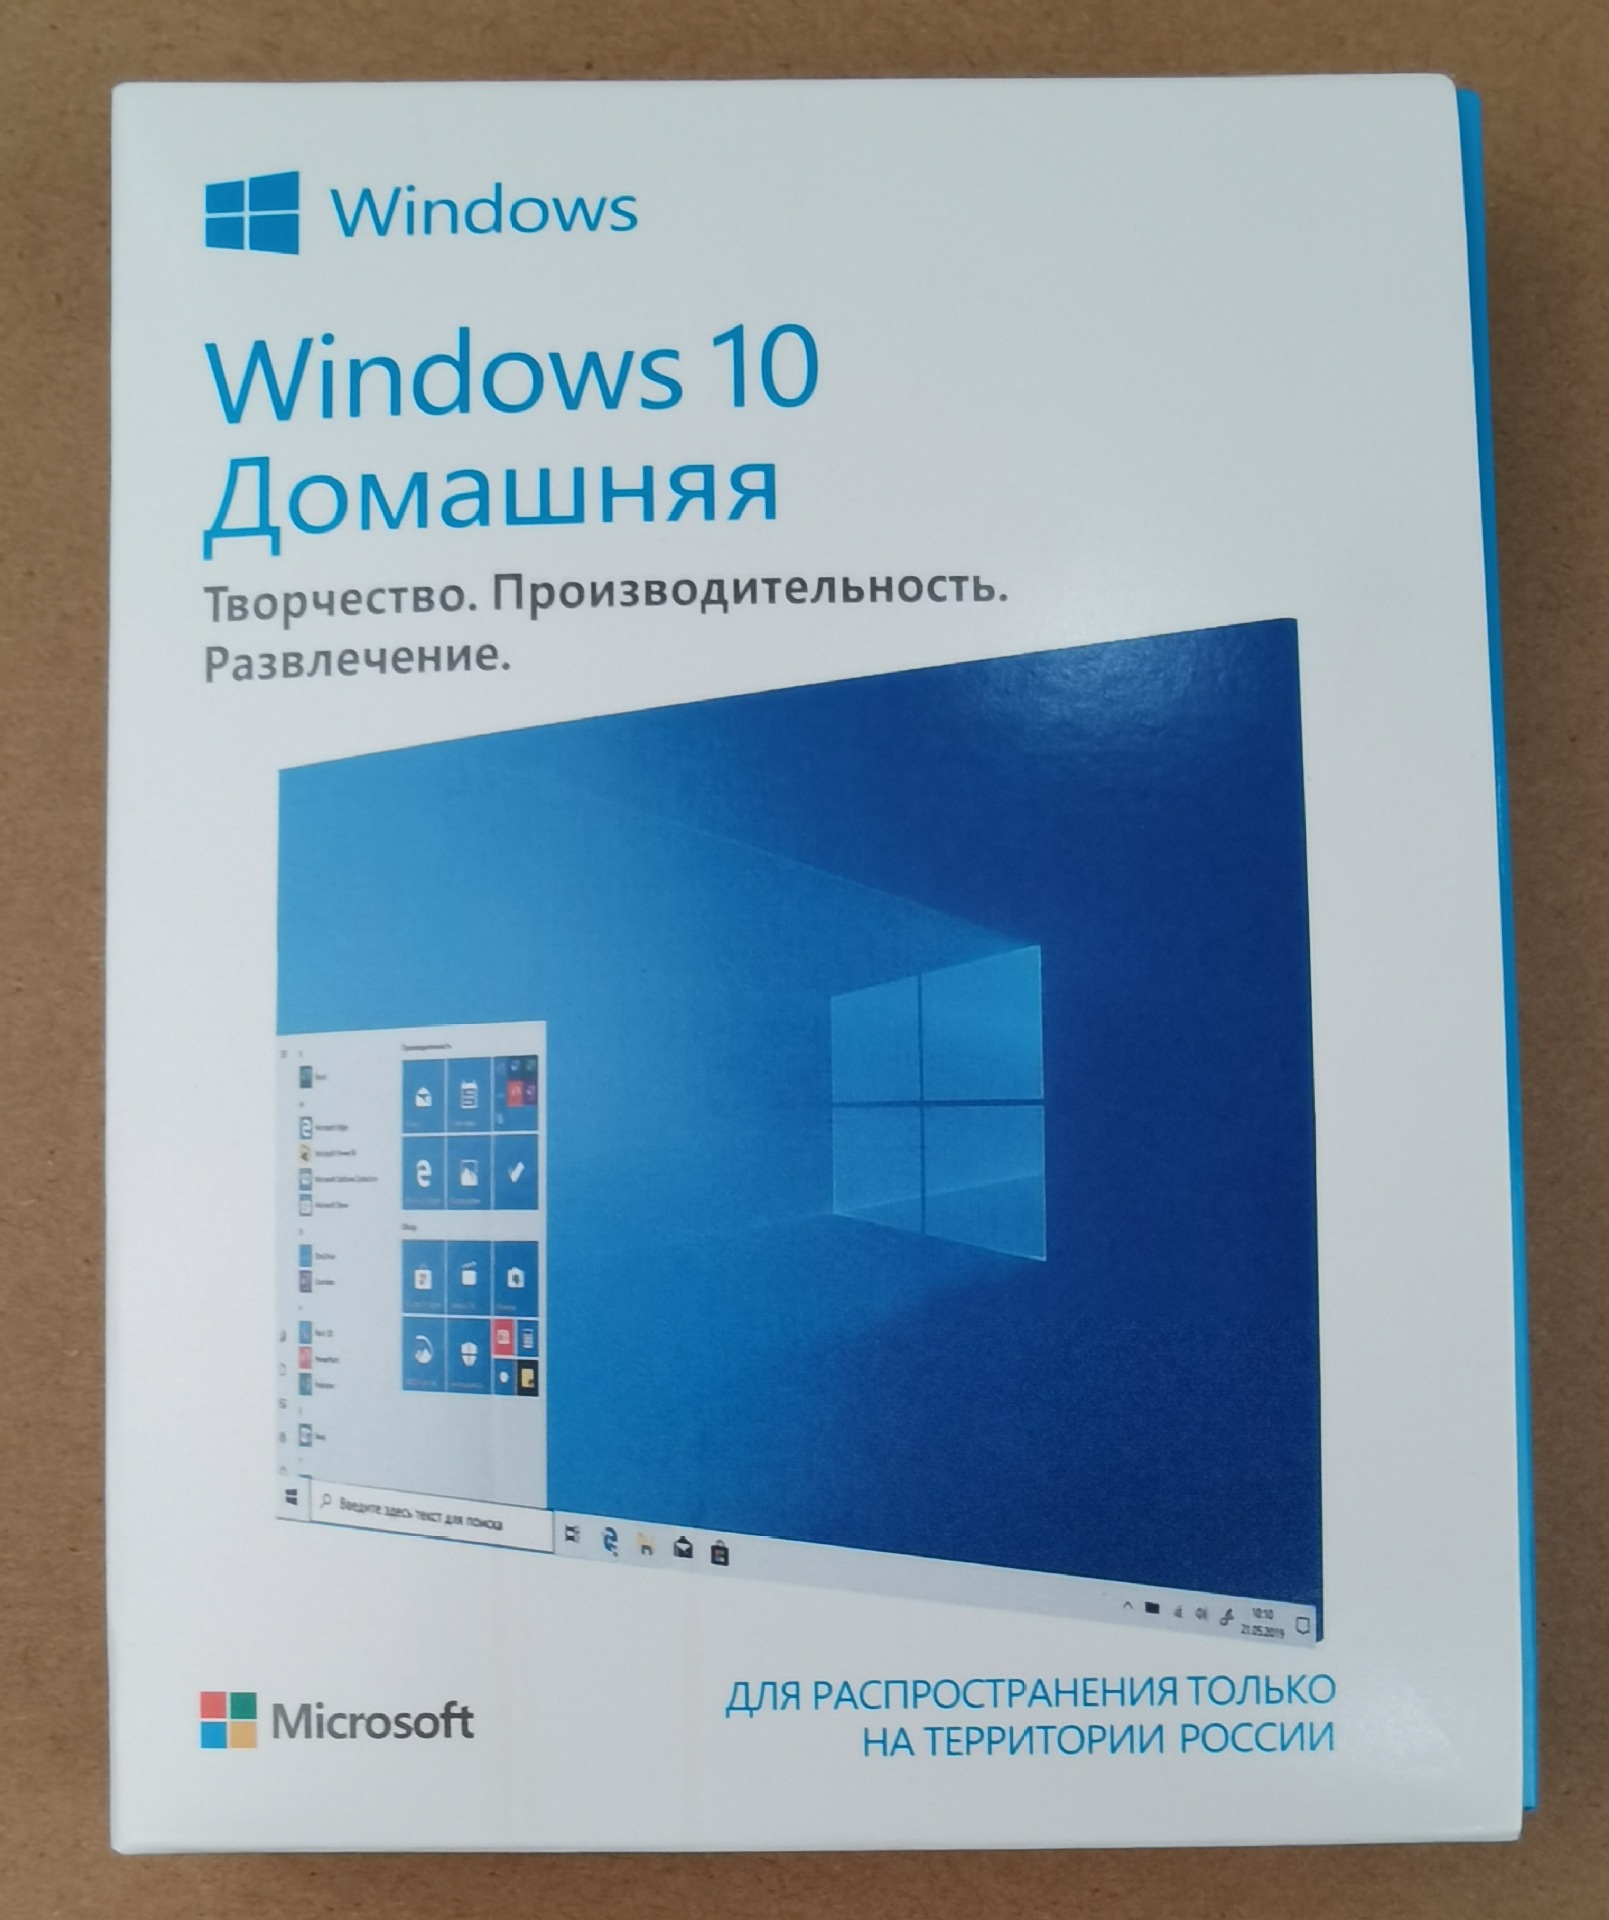 俄罗斯语（俄文）windows 10 Home 操作系统软件,USB安装在线激活